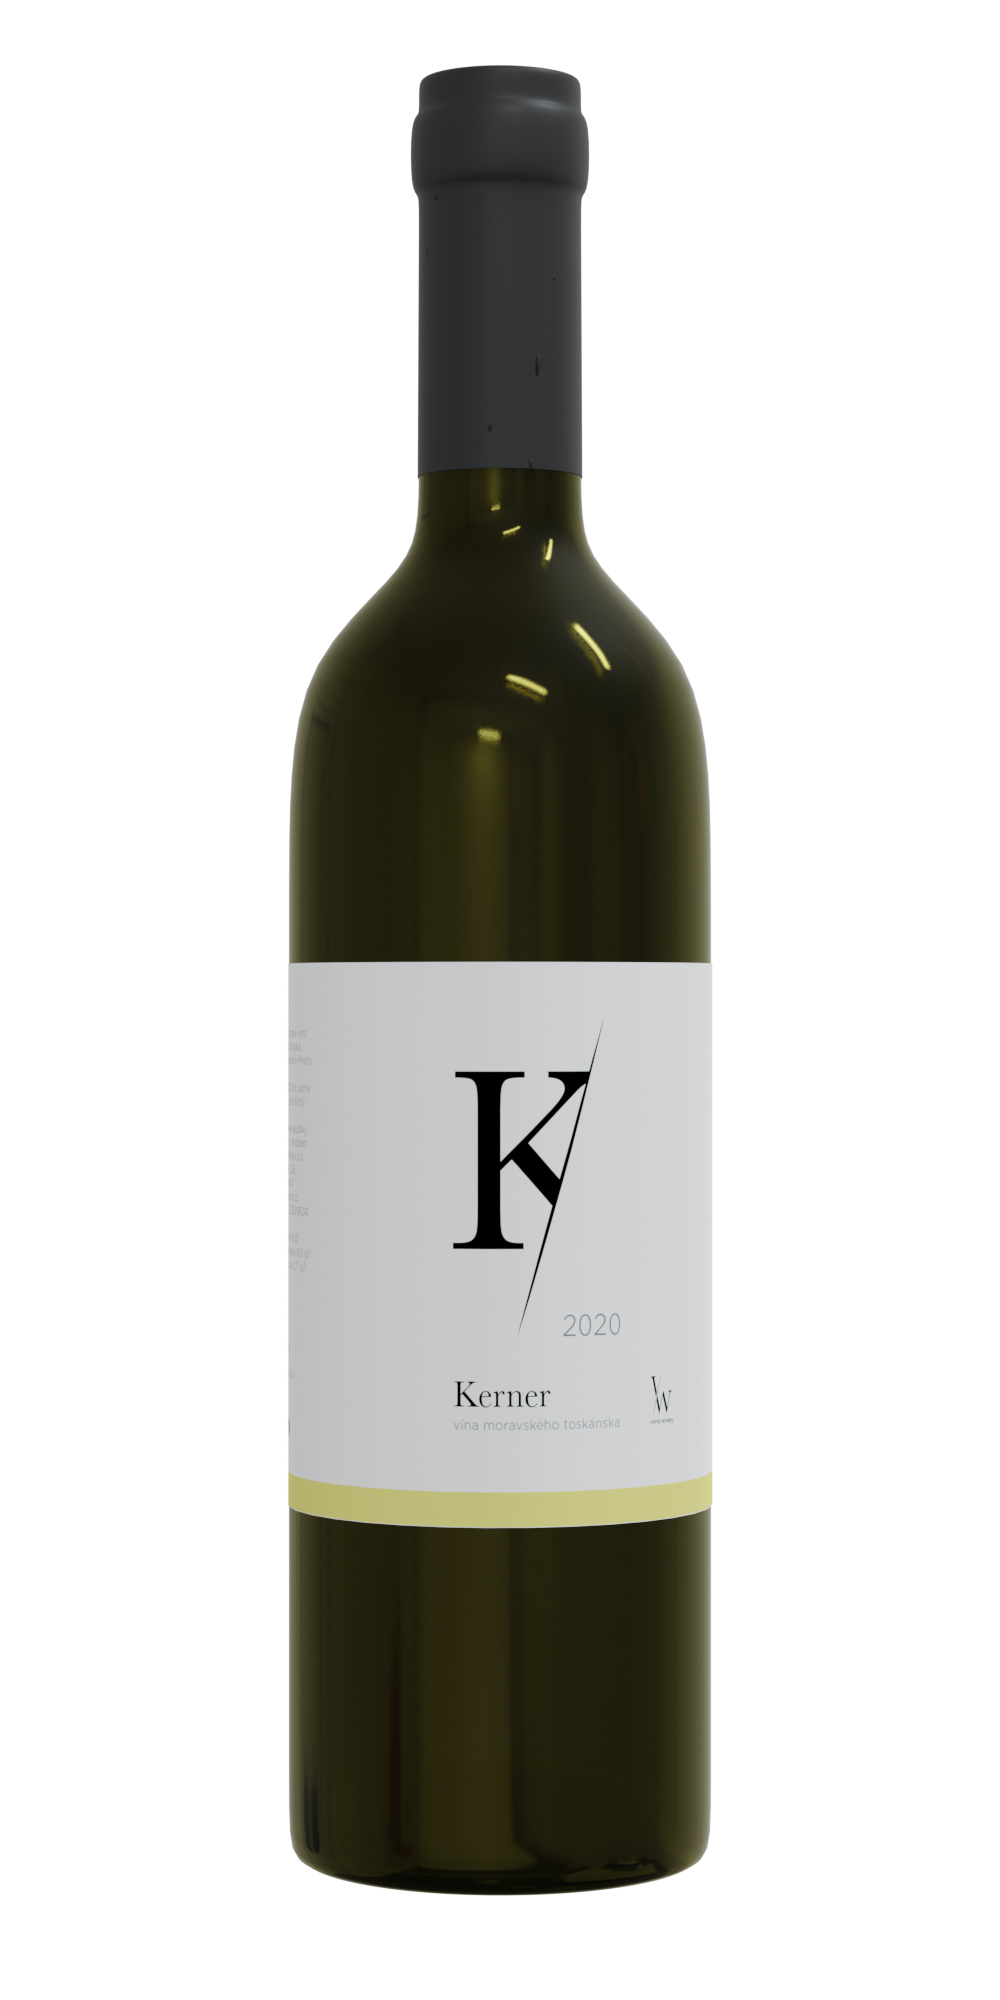 Vinnio Winery - Kerner 2020